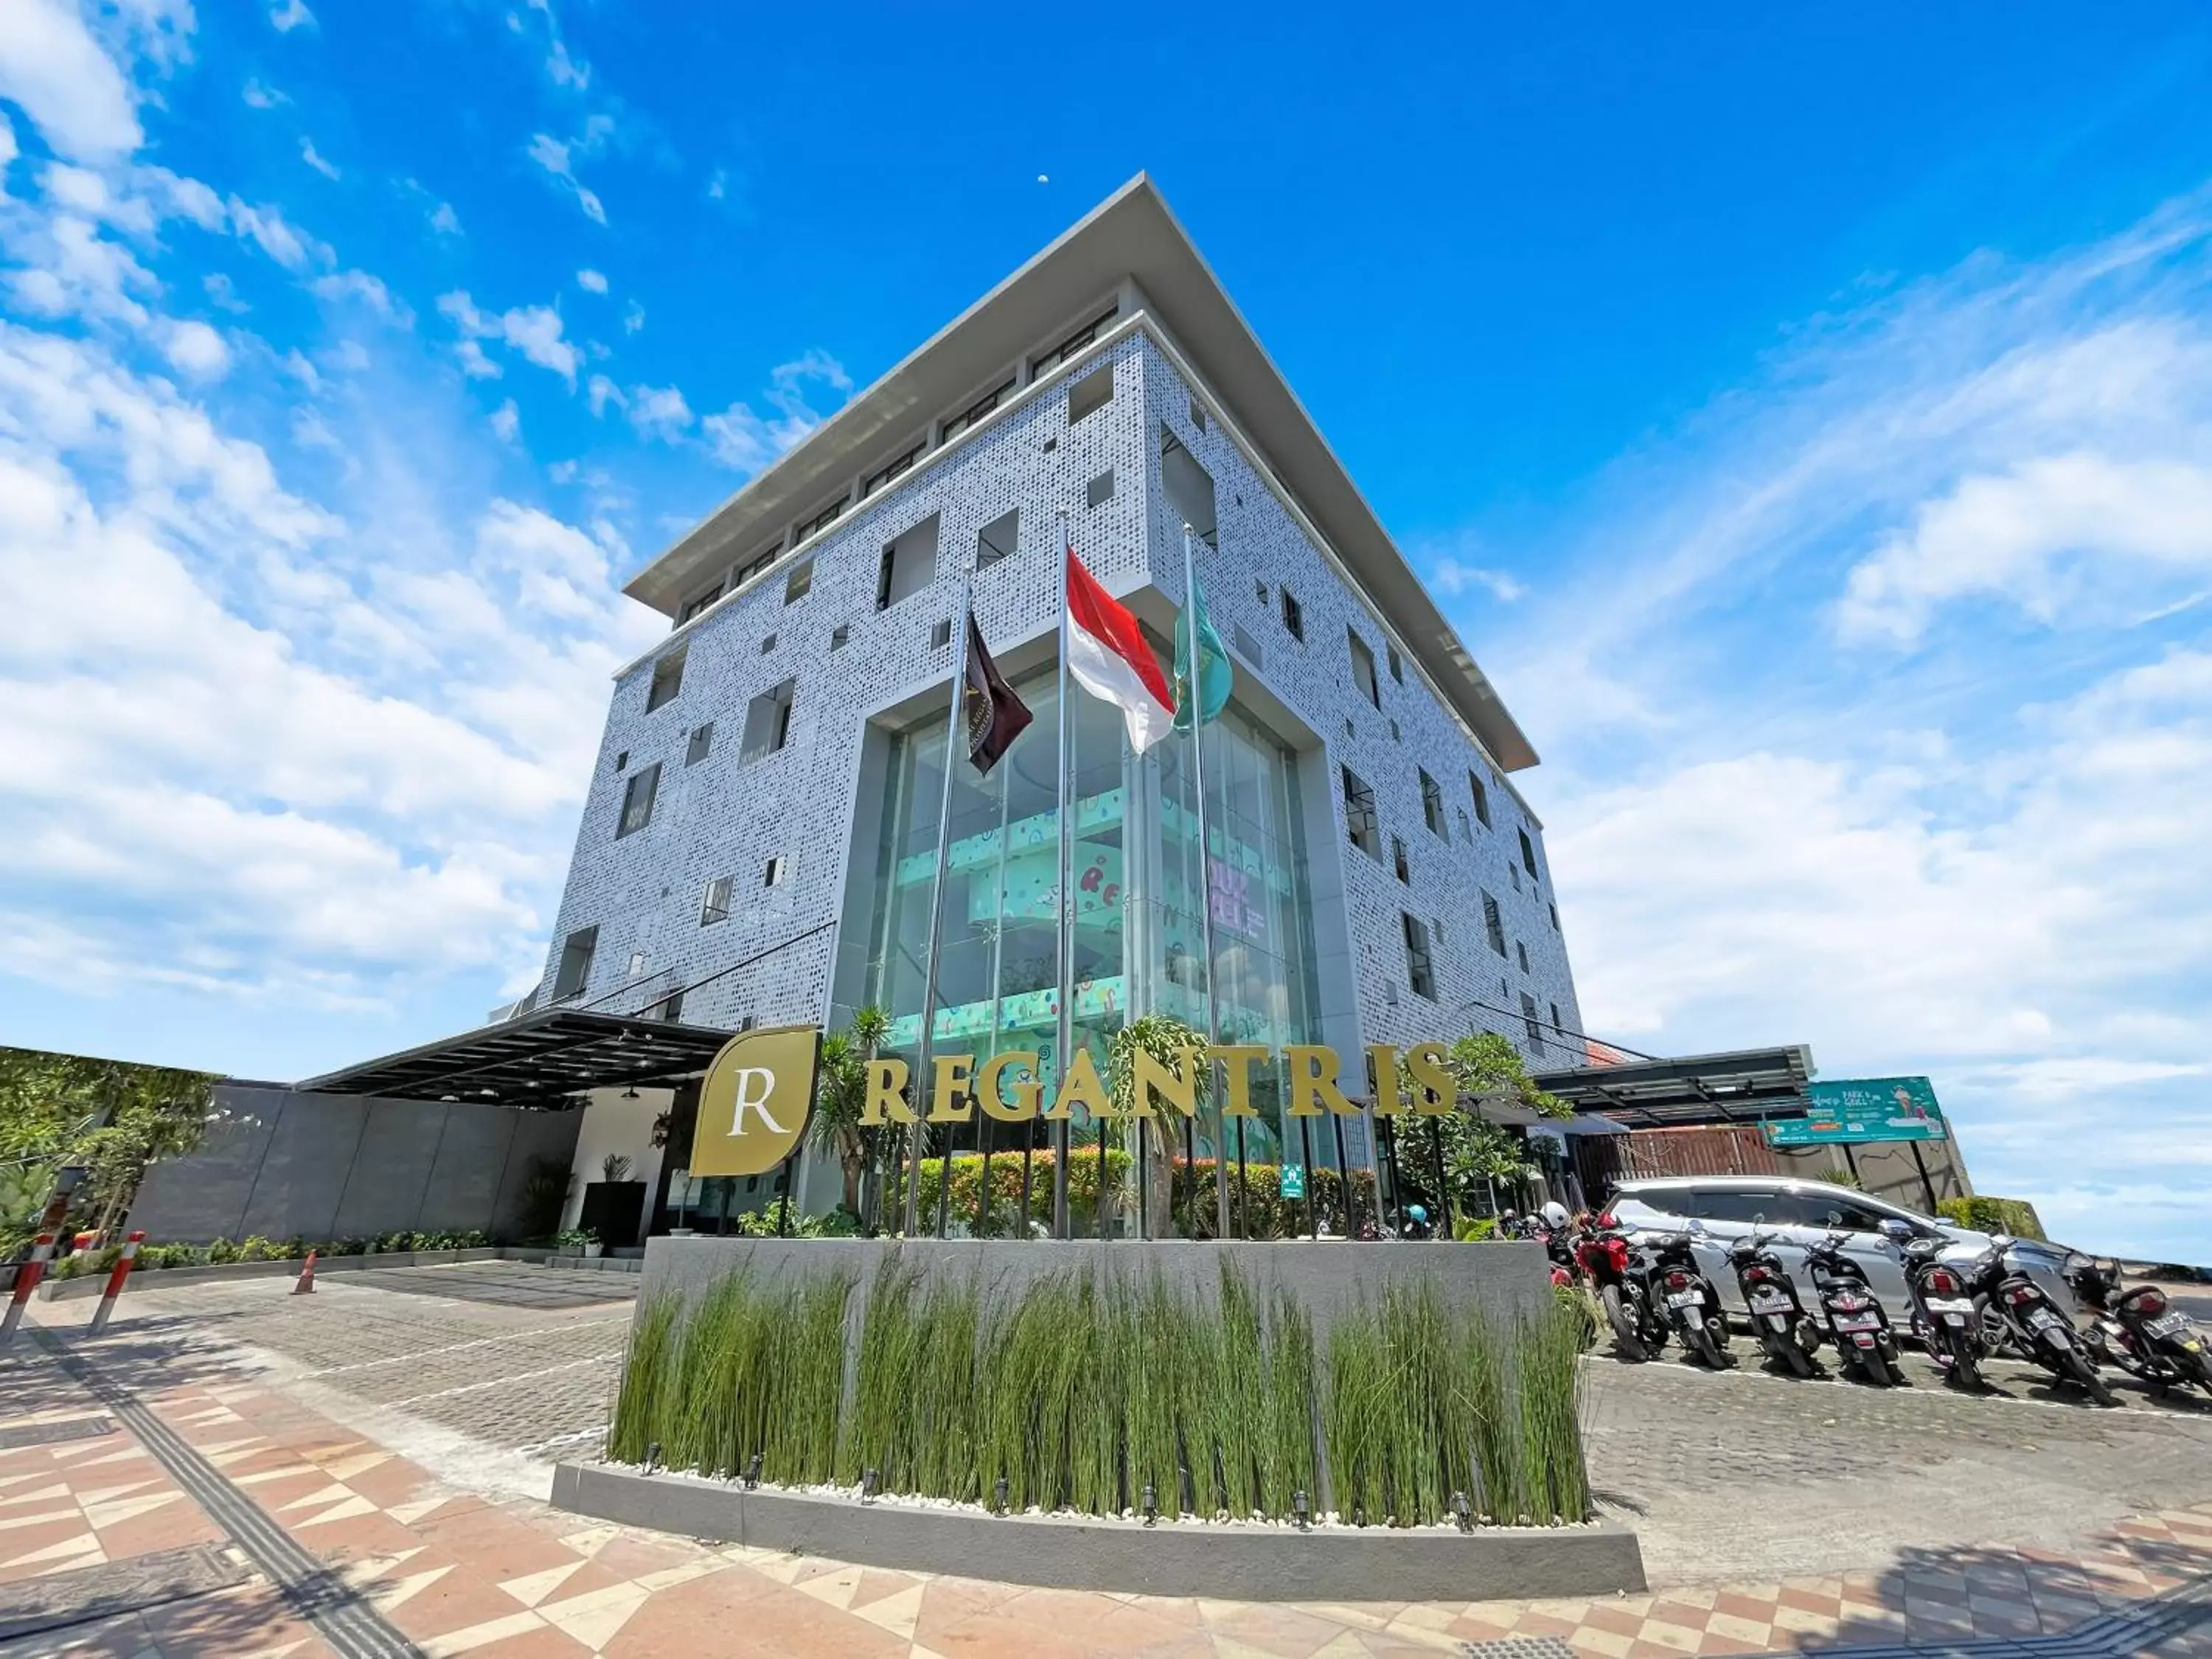 Property Building in Regantris Surabaya